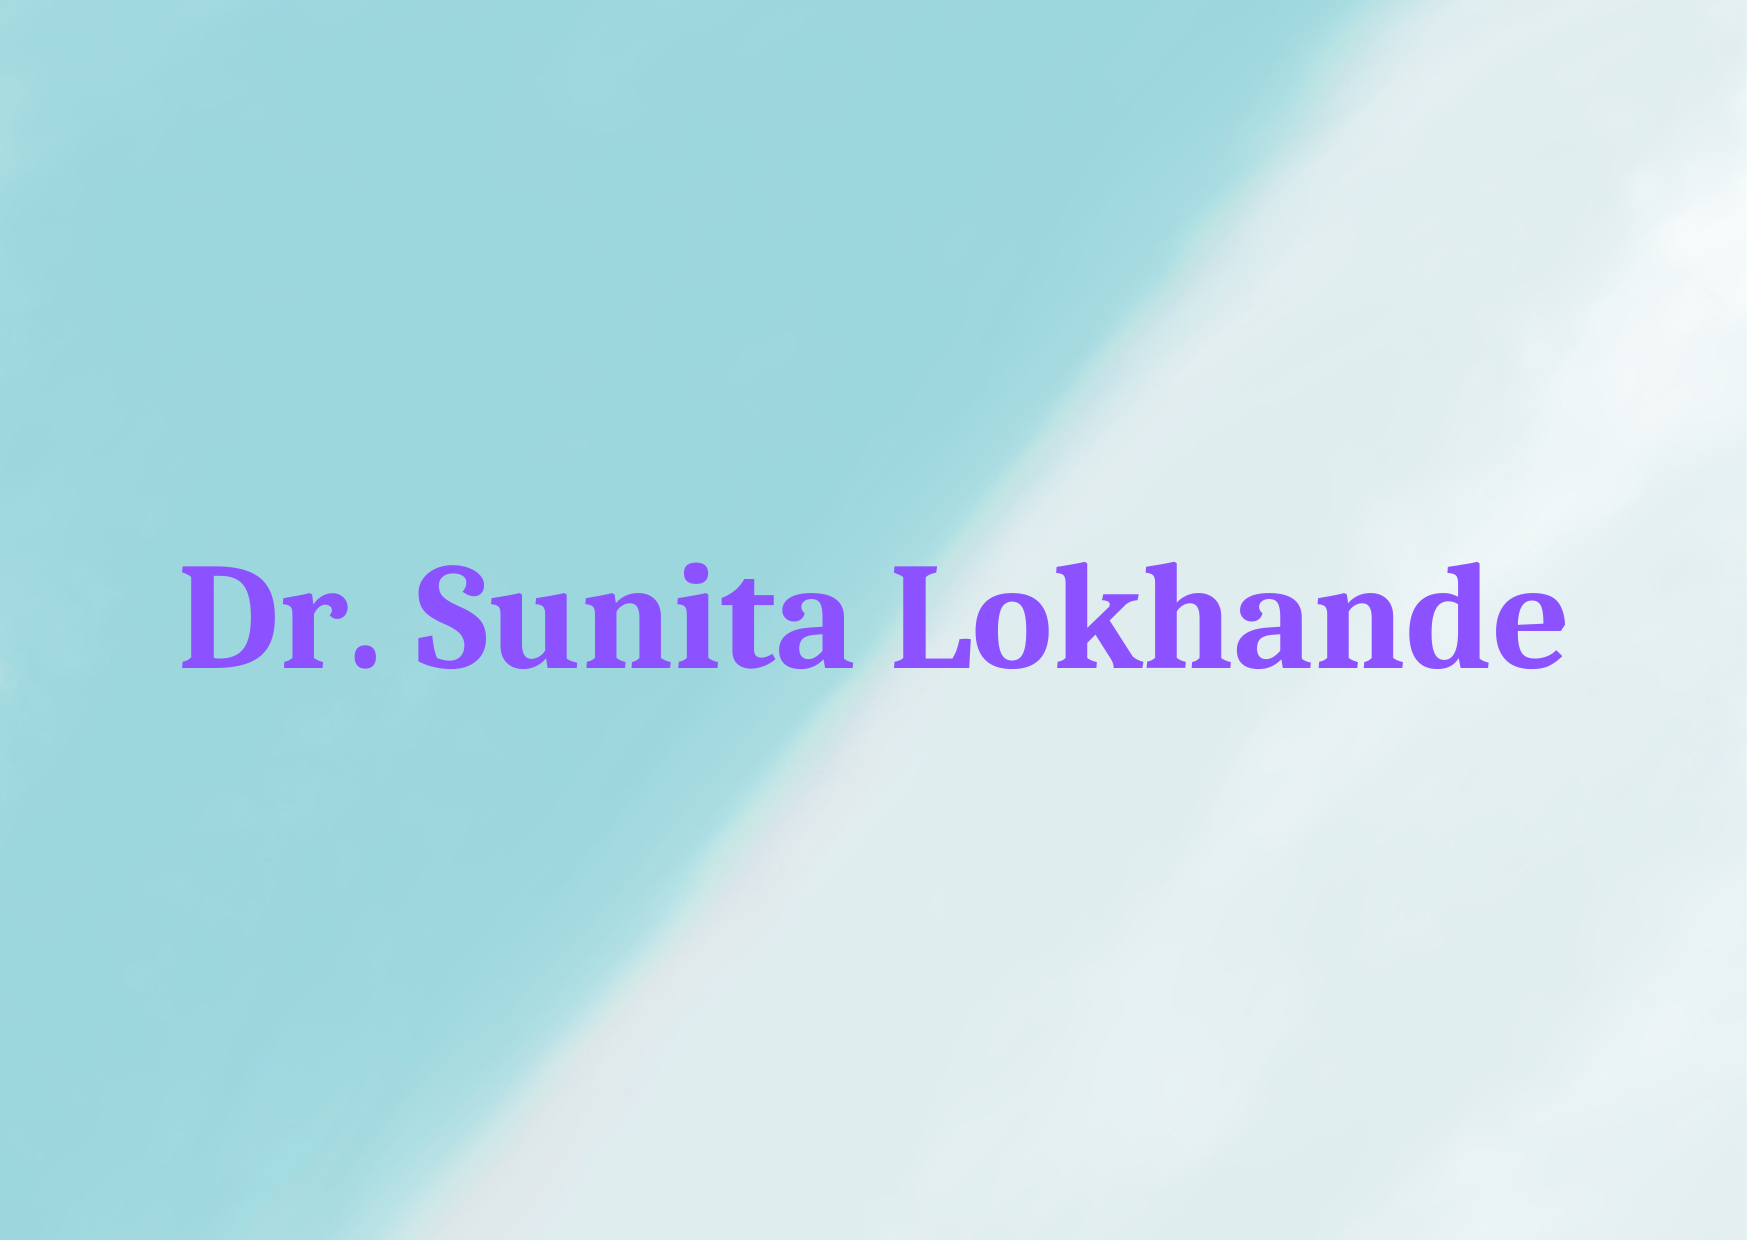 Dr. Sunita Lokhande,   